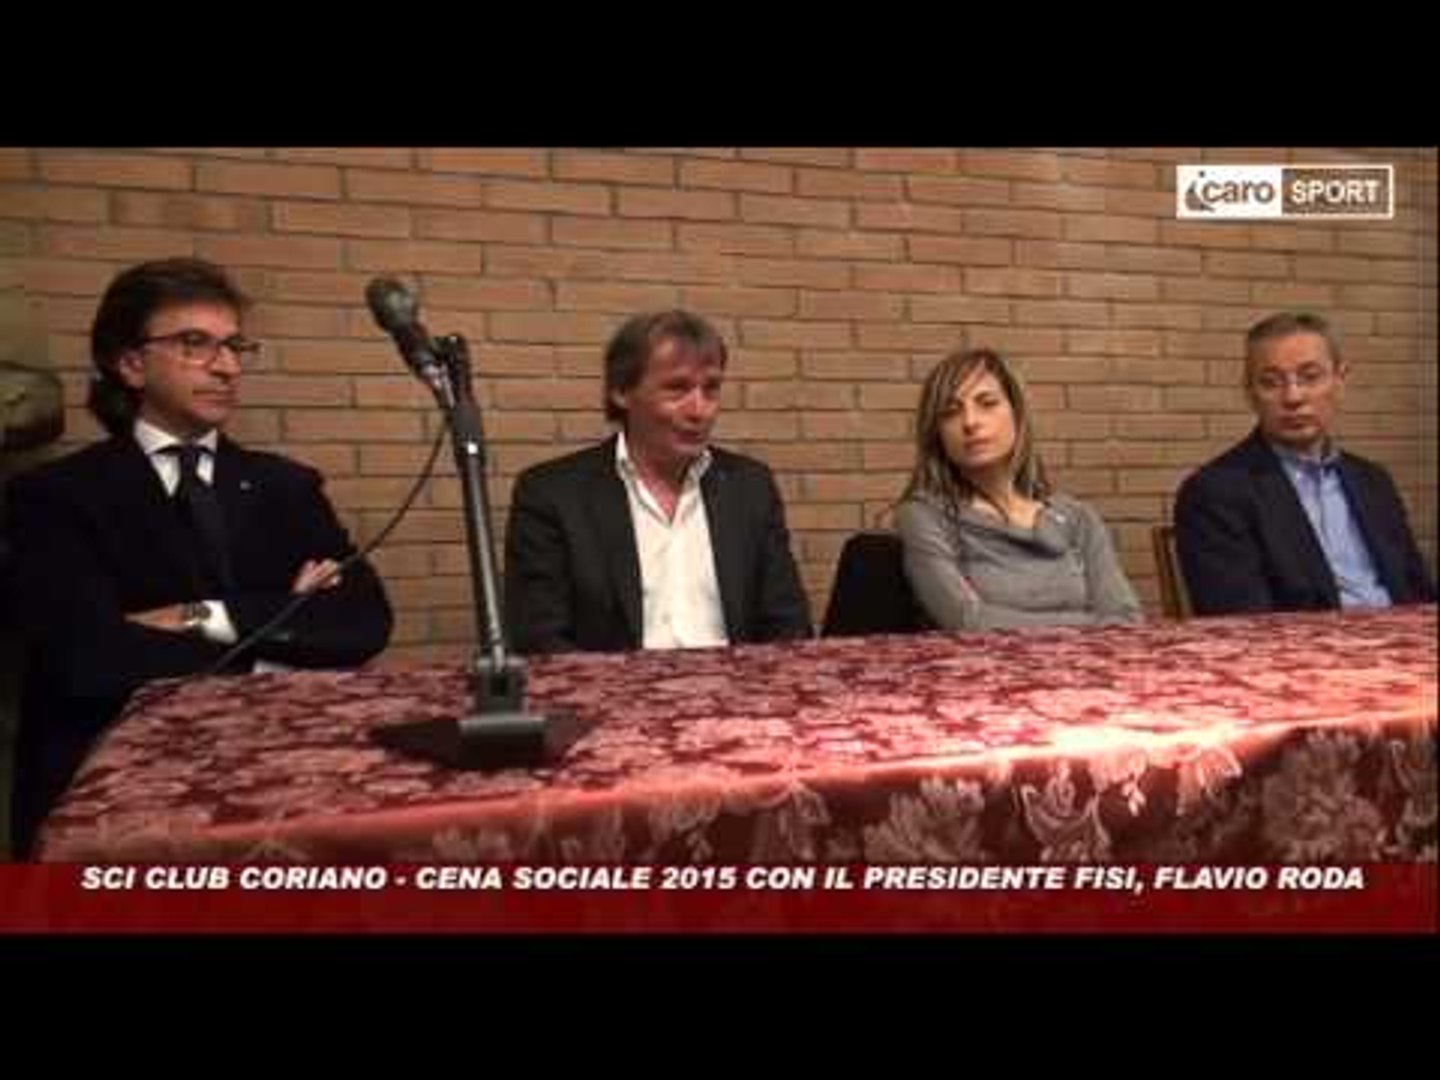 Icaro Sport. Sci Club Coriano: cena sociale con il presidente FISI Roda -  Video Dailymotion